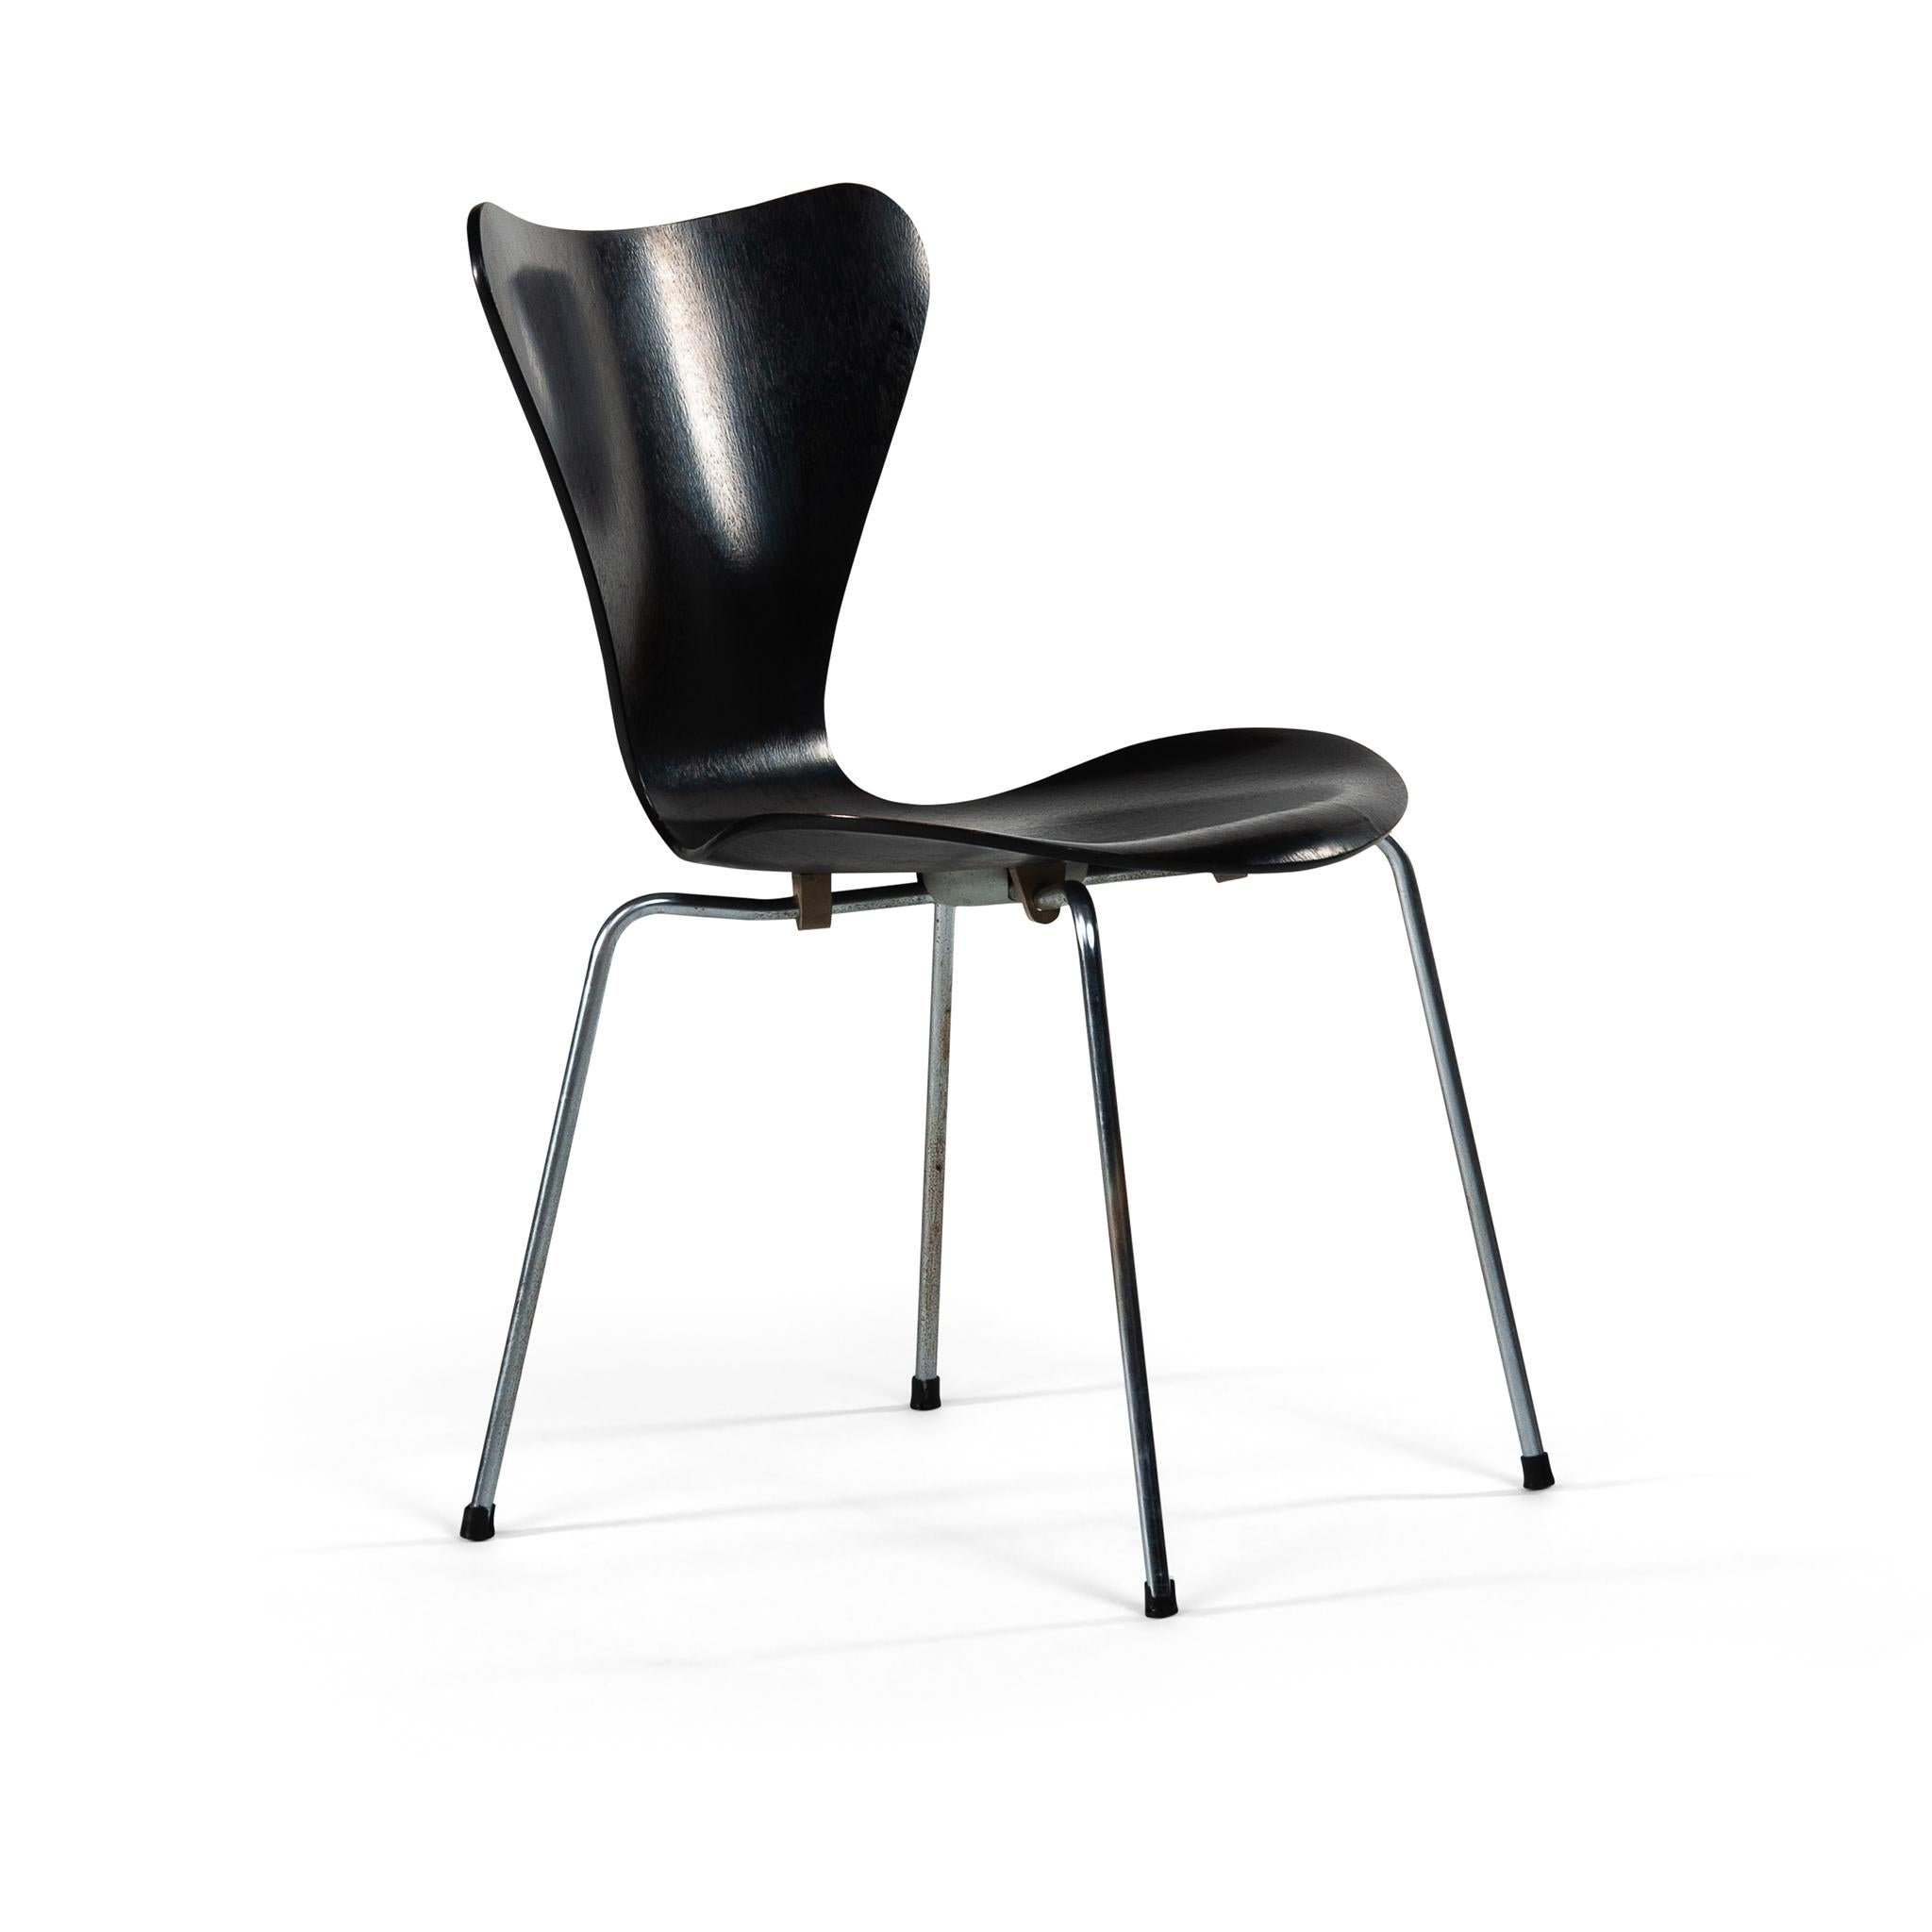 Danish Six Black Arne Jacobsen Dining chairs Mod. 3107 for Fritz Hansen Denmark 1964 For Sale